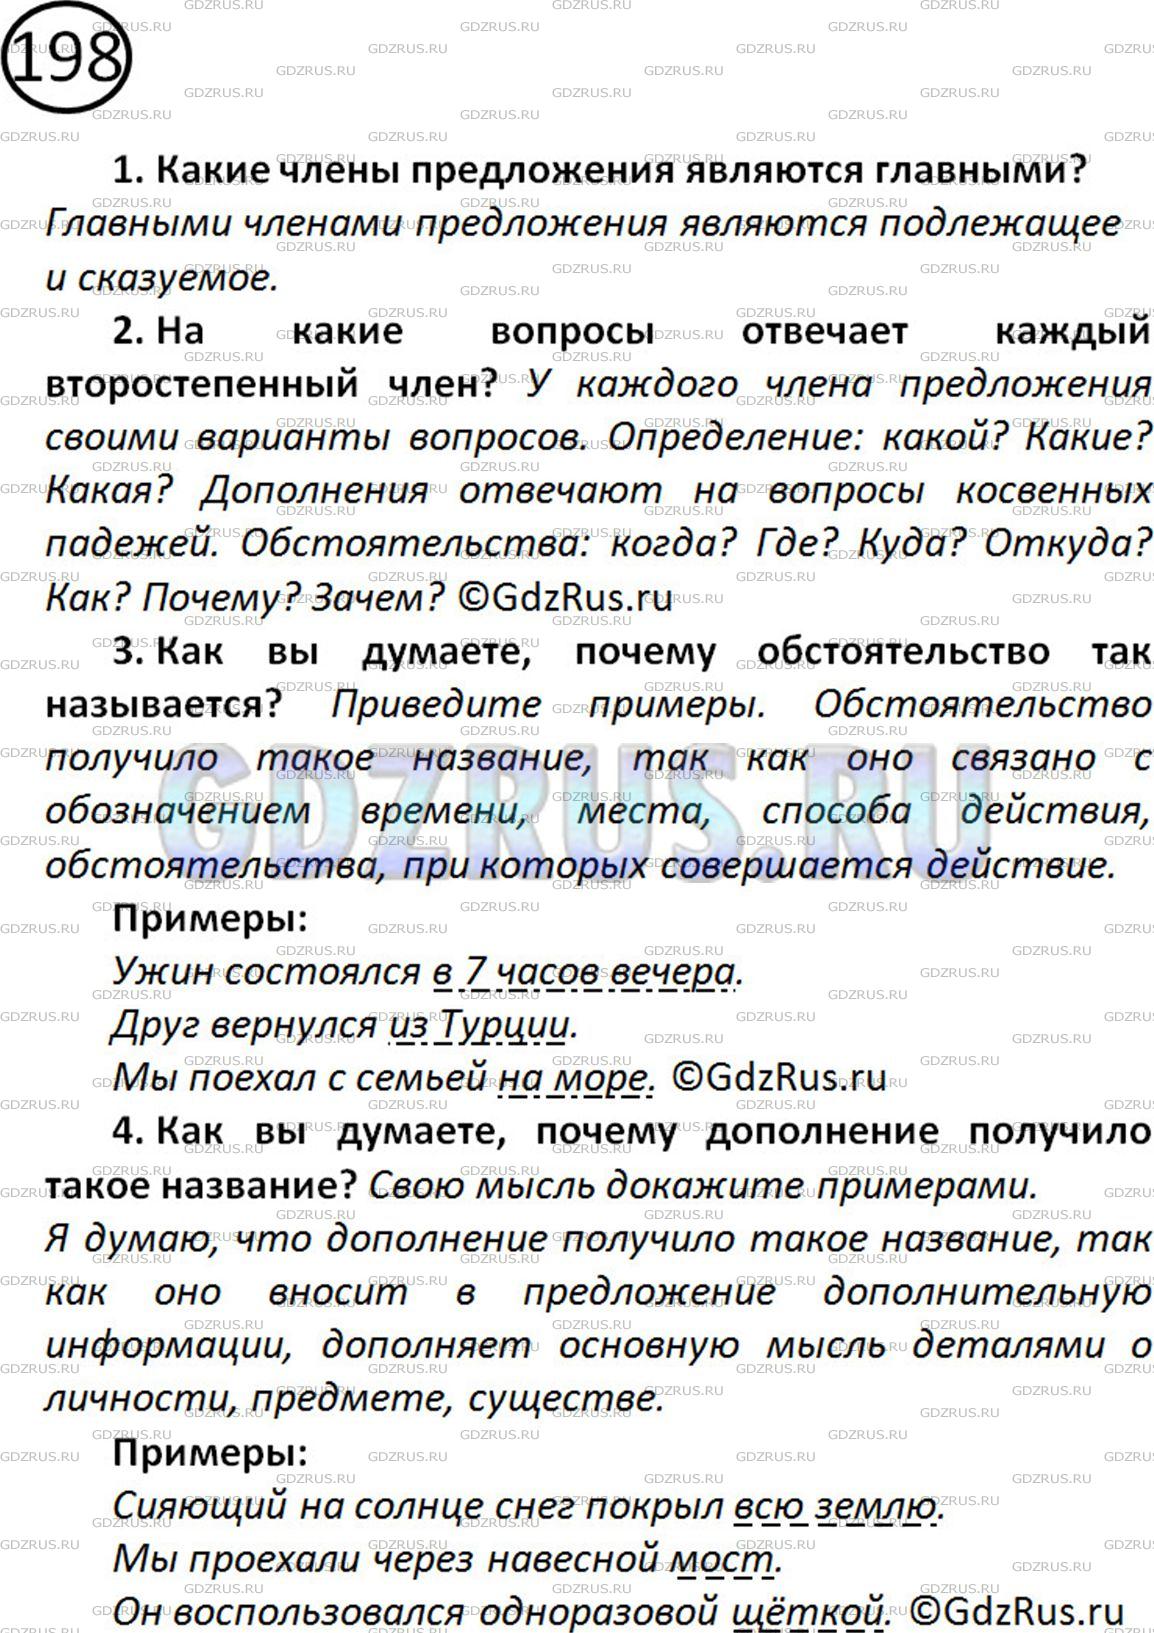 Фото решения 2: Номер №203 из ГДЗ по Русскому языку 5 класс: Ладыженская Т.А. 2019г.